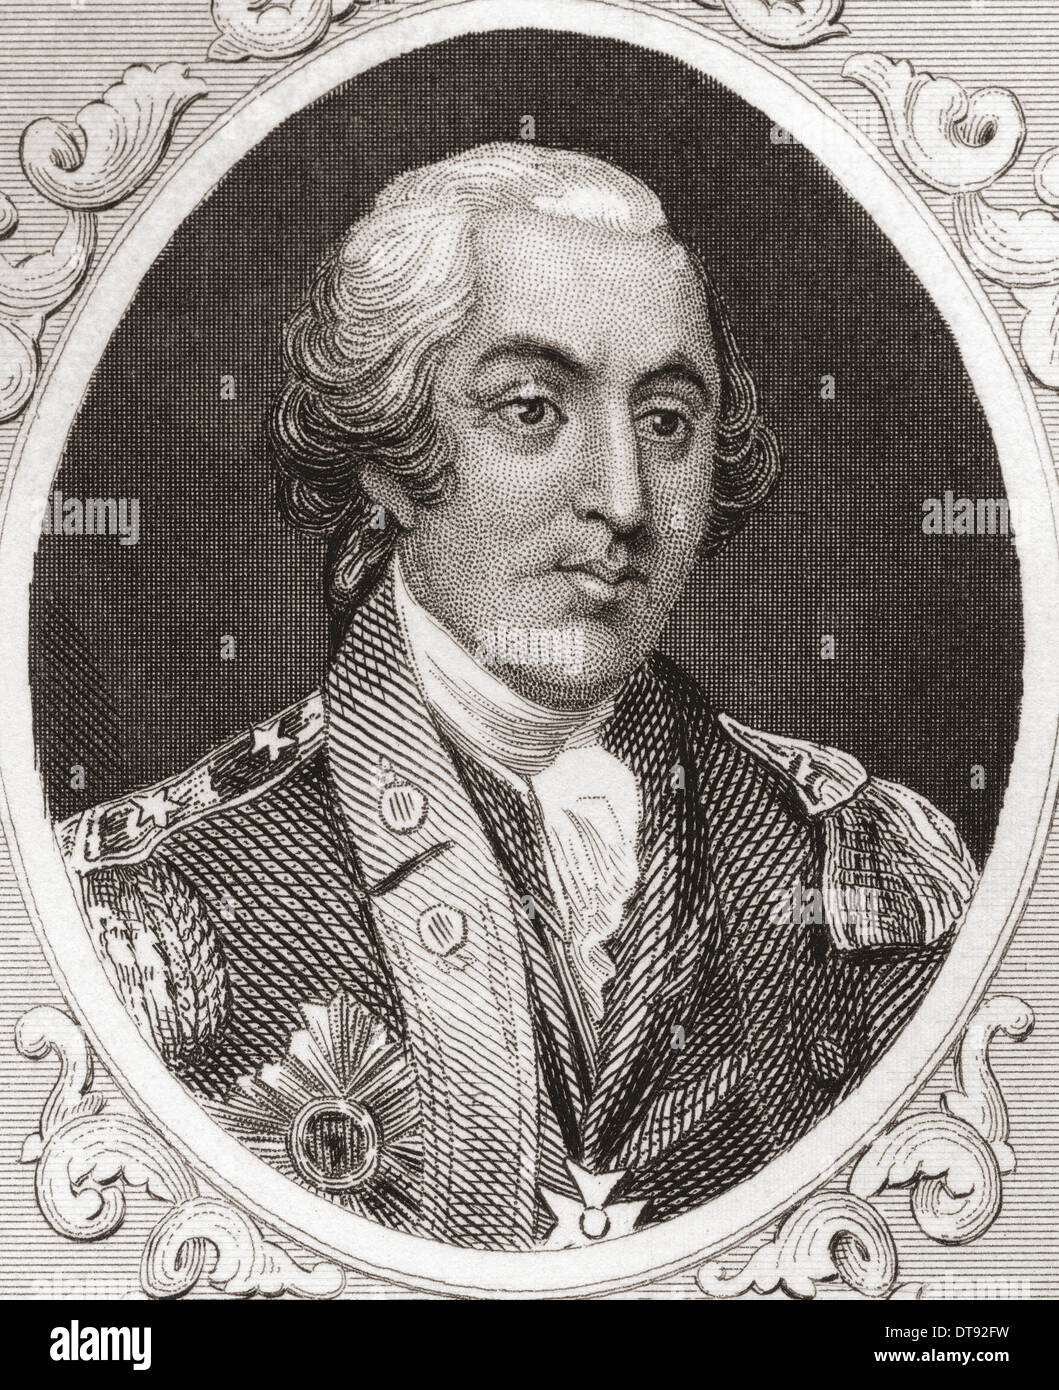 Friedrich Wilhelm August Heinrich Ferdinand von Steuben, 1730 - 1794, alias le Baron von Steuben. Officier de l'armée prussienne-né. Banque D'Images